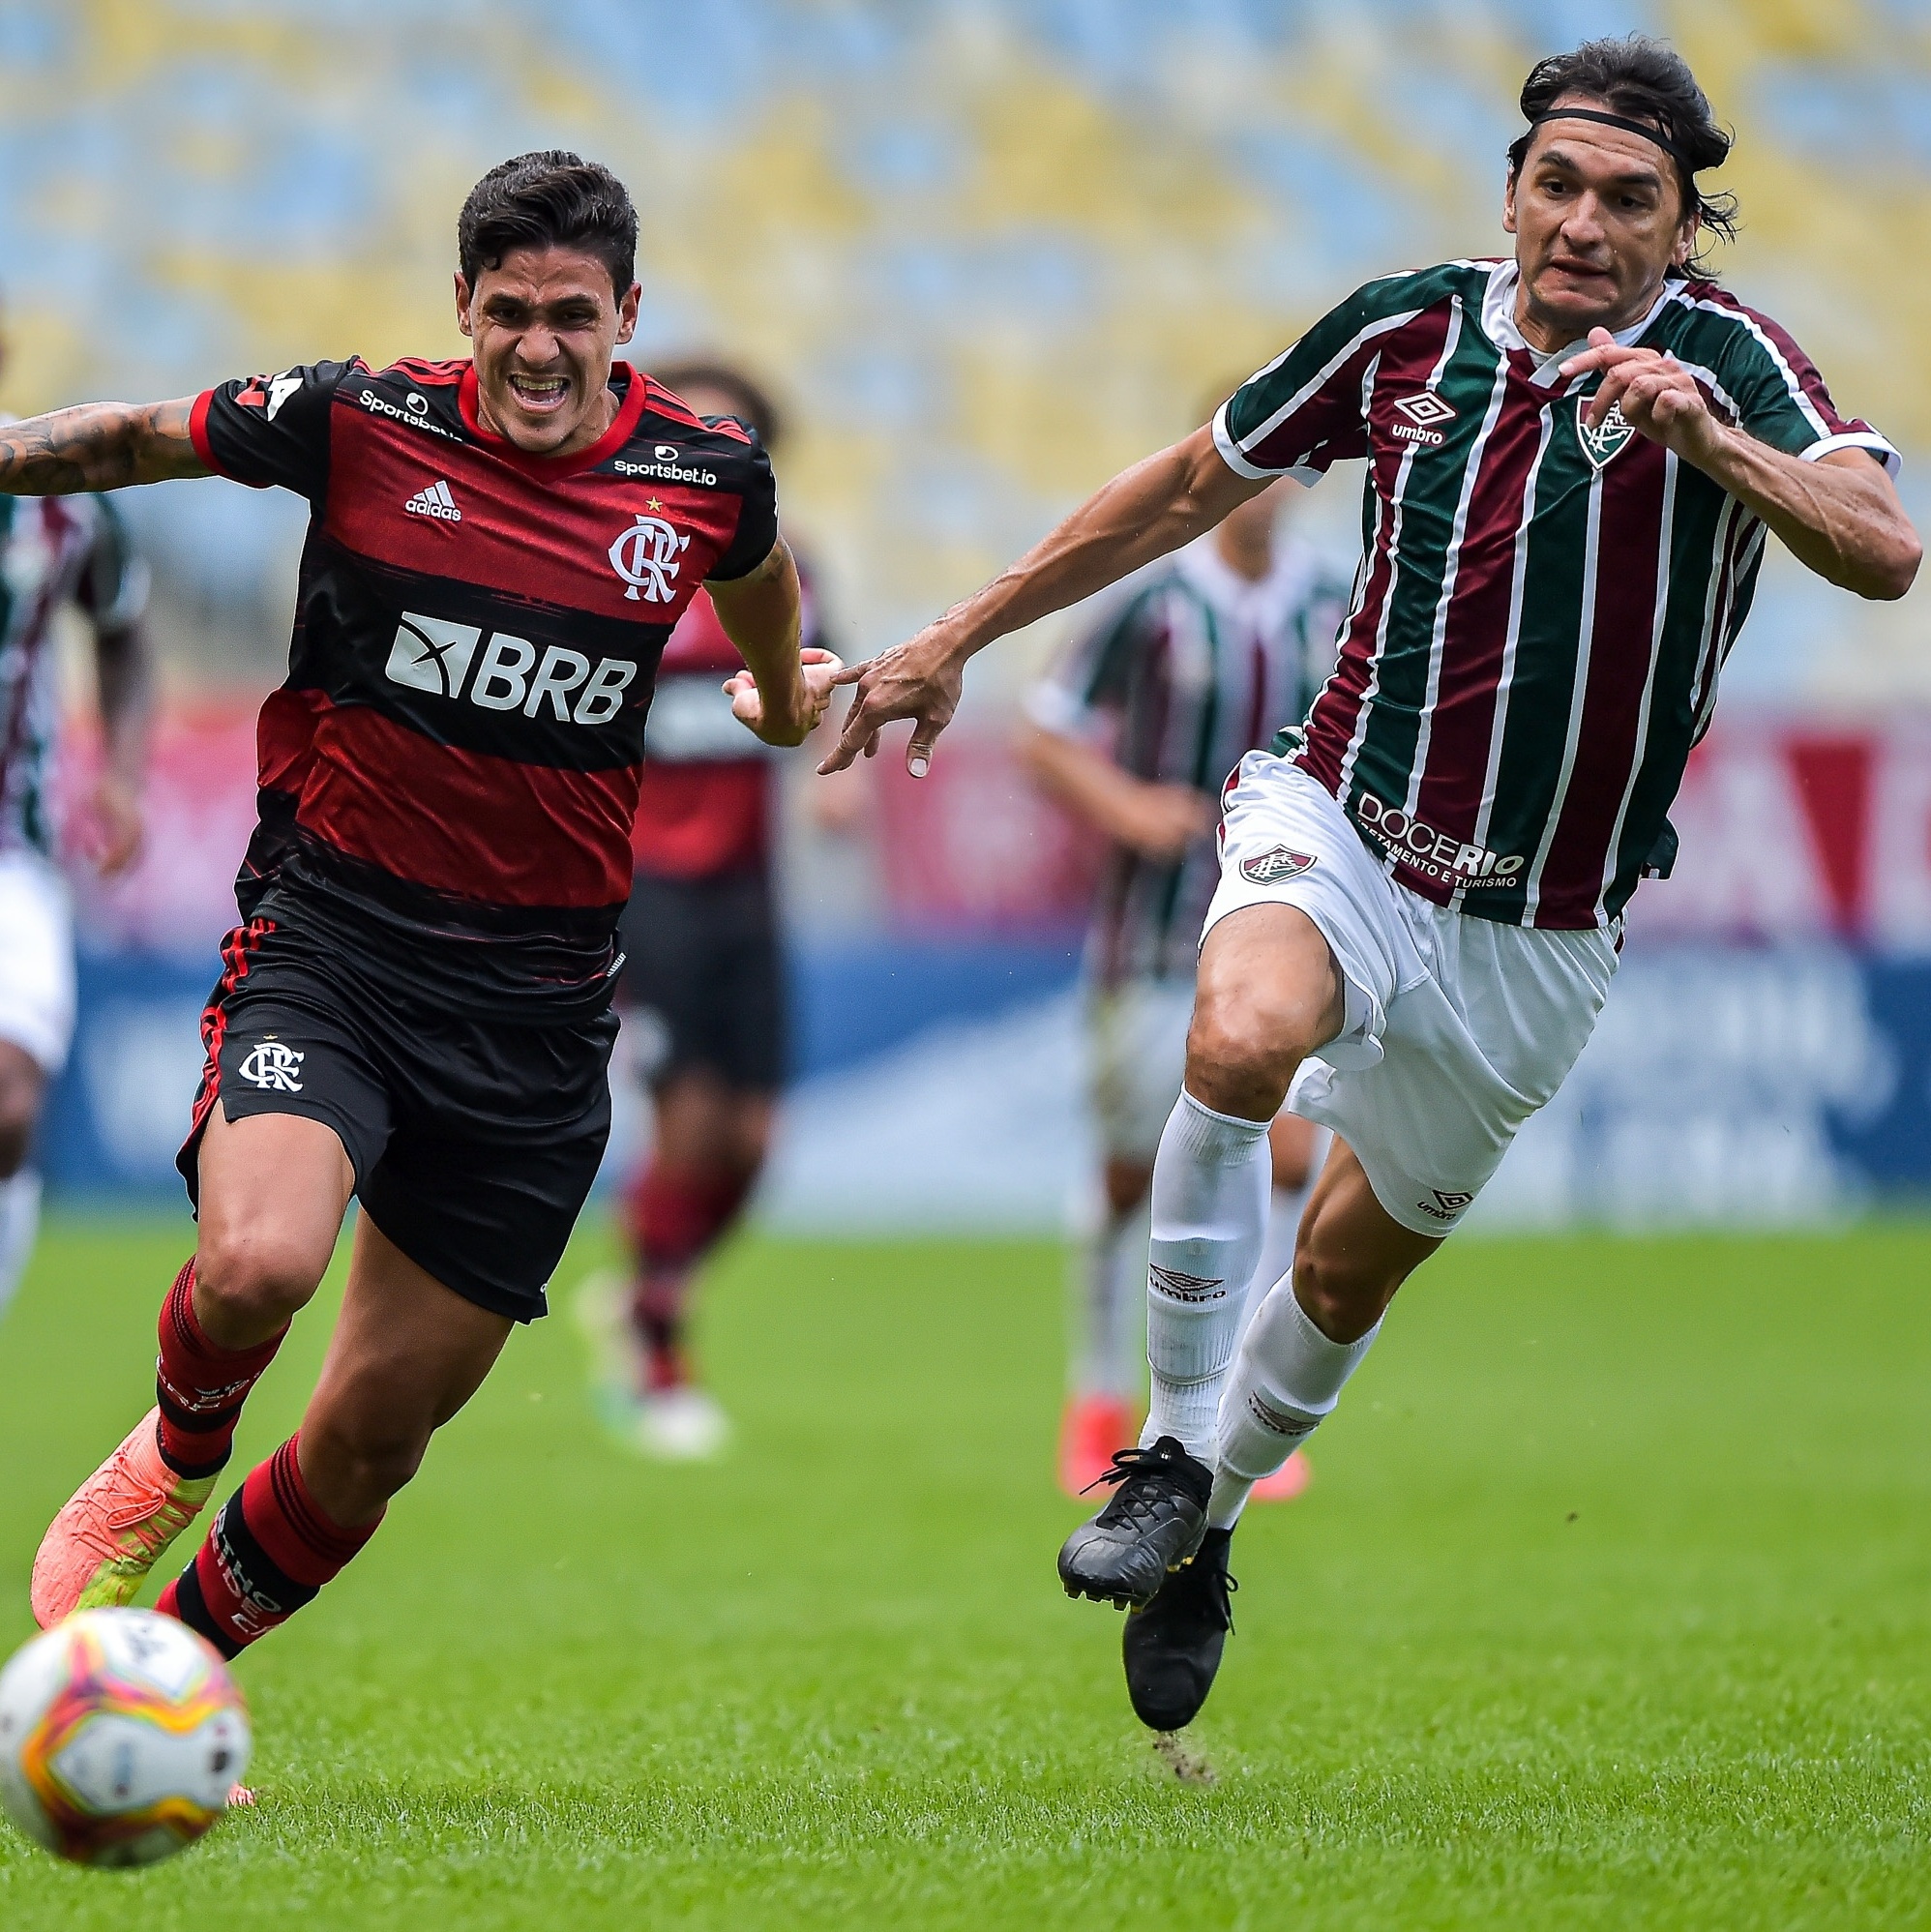 Flamengo x Fluminense : veja escalações, desfalques e arbitragem da final -  Folha do ES